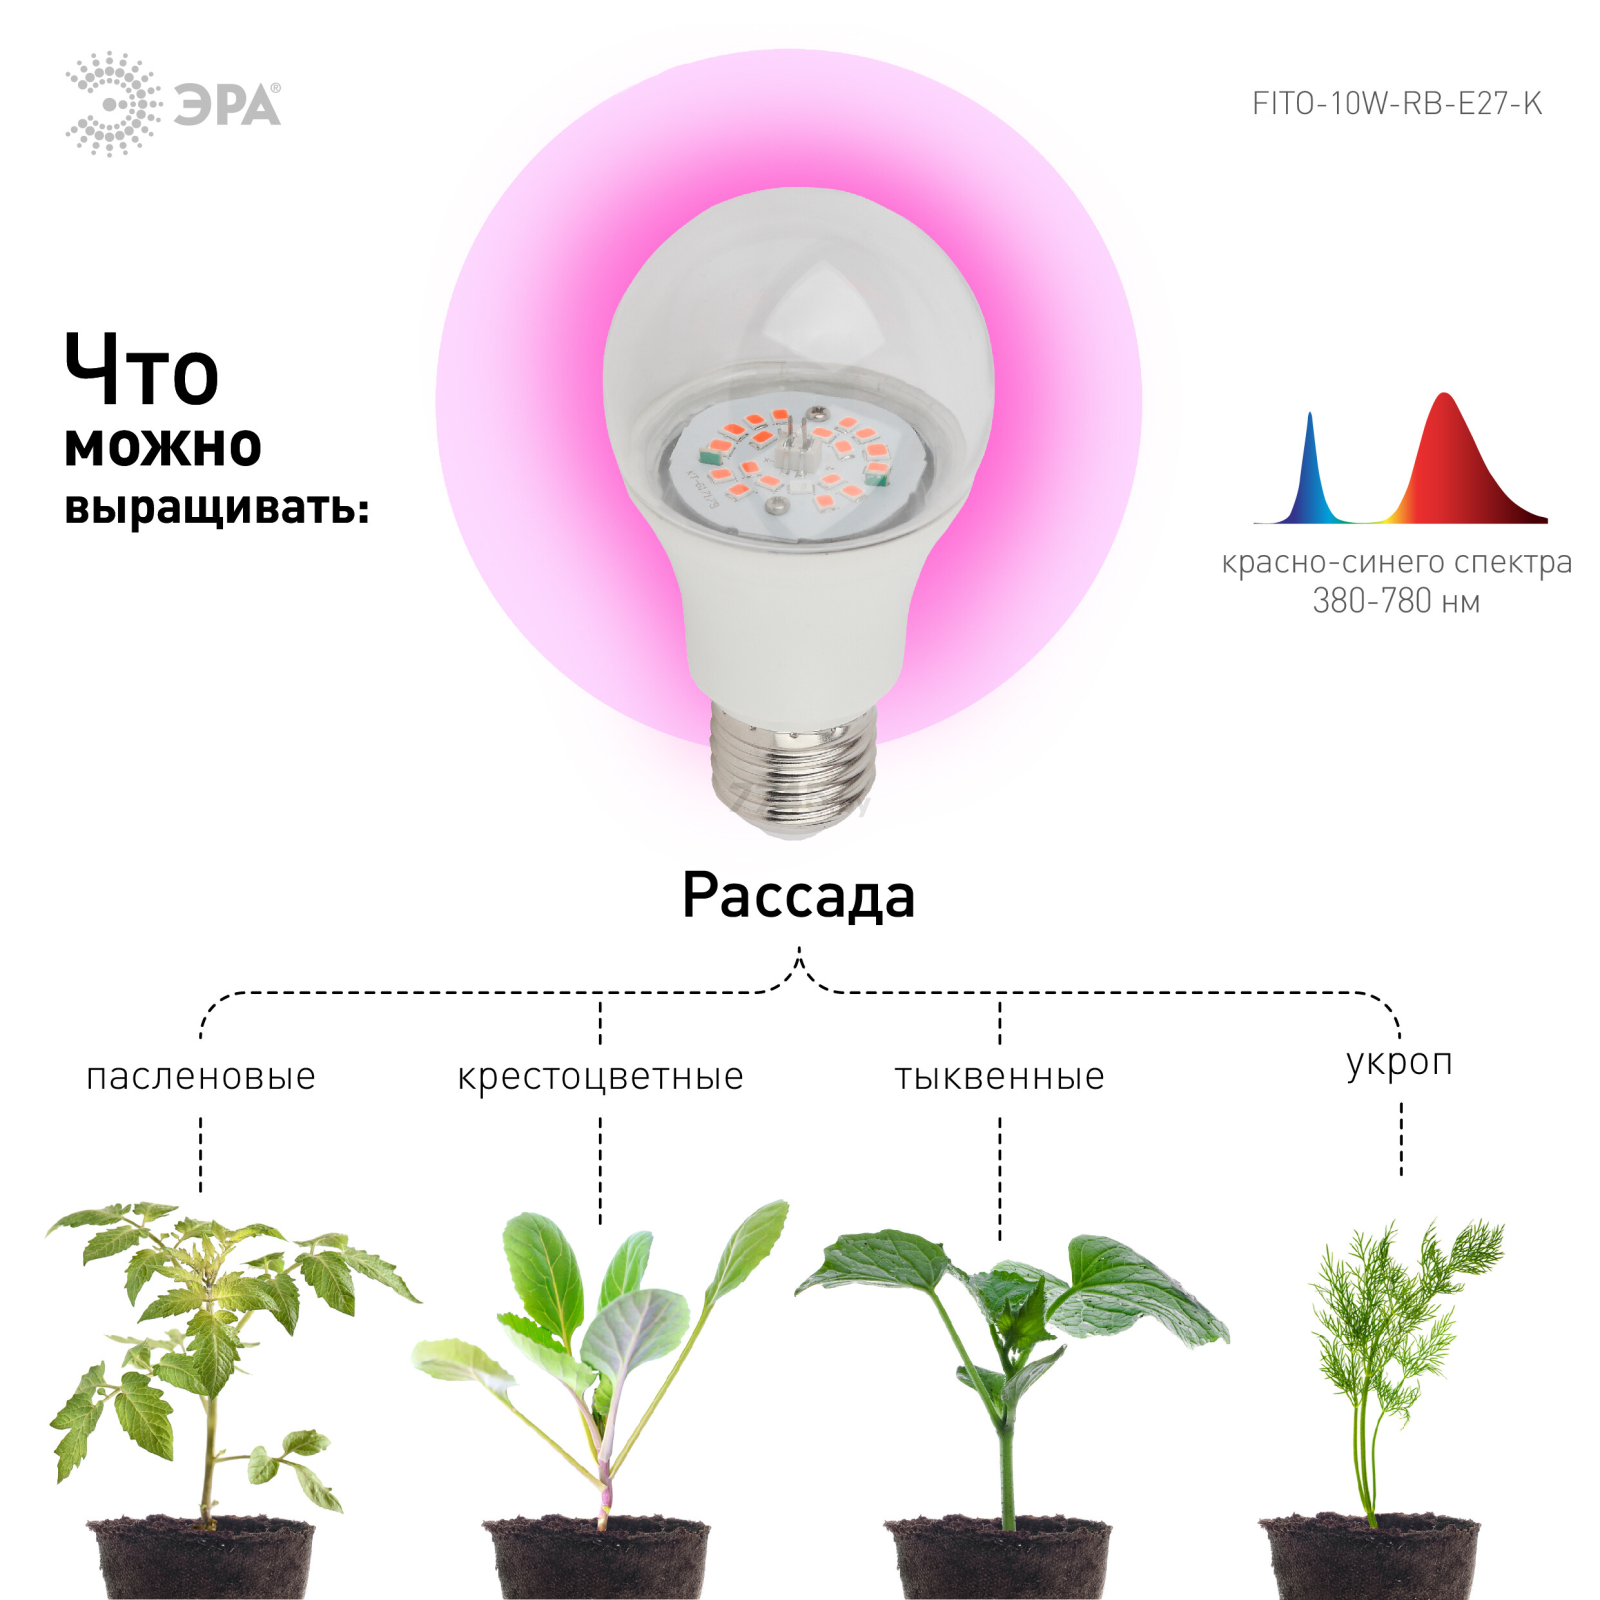 Фитолампа для растений красно-синего спектра ЭРА FITO-10W-RB-E27-K (12/36/1728) - Фото 5